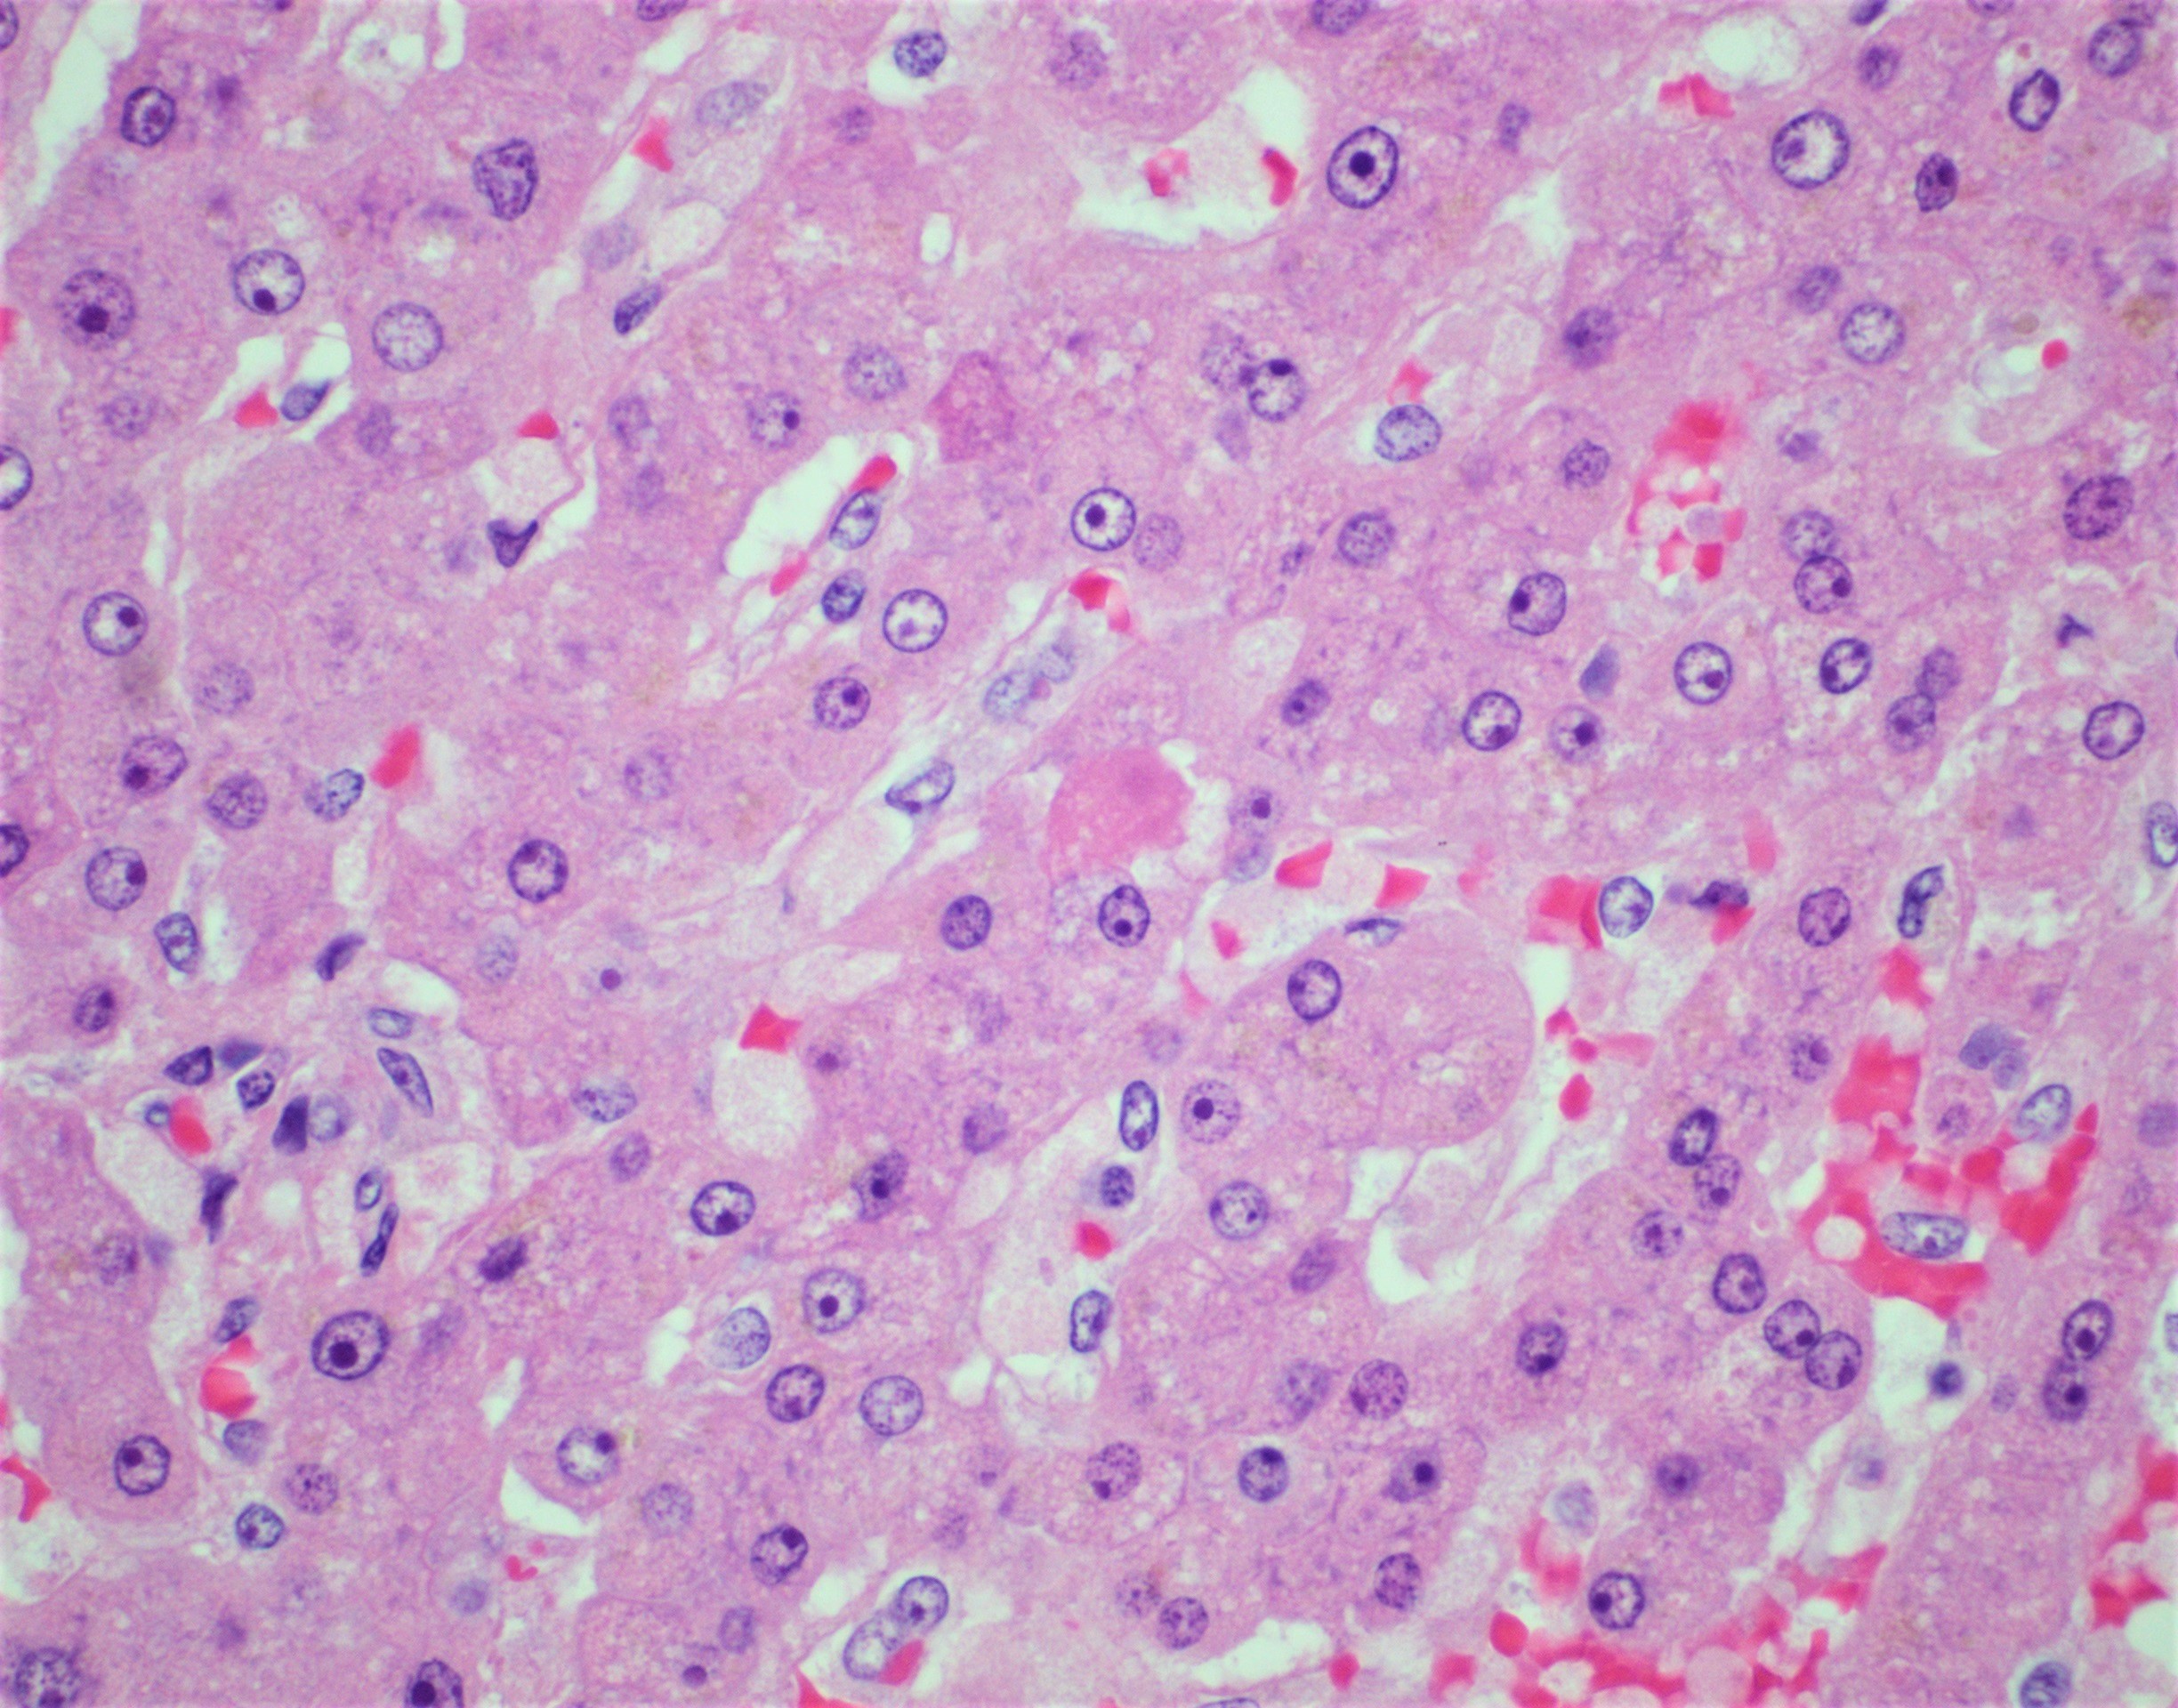 Apoptotic hepatocytes